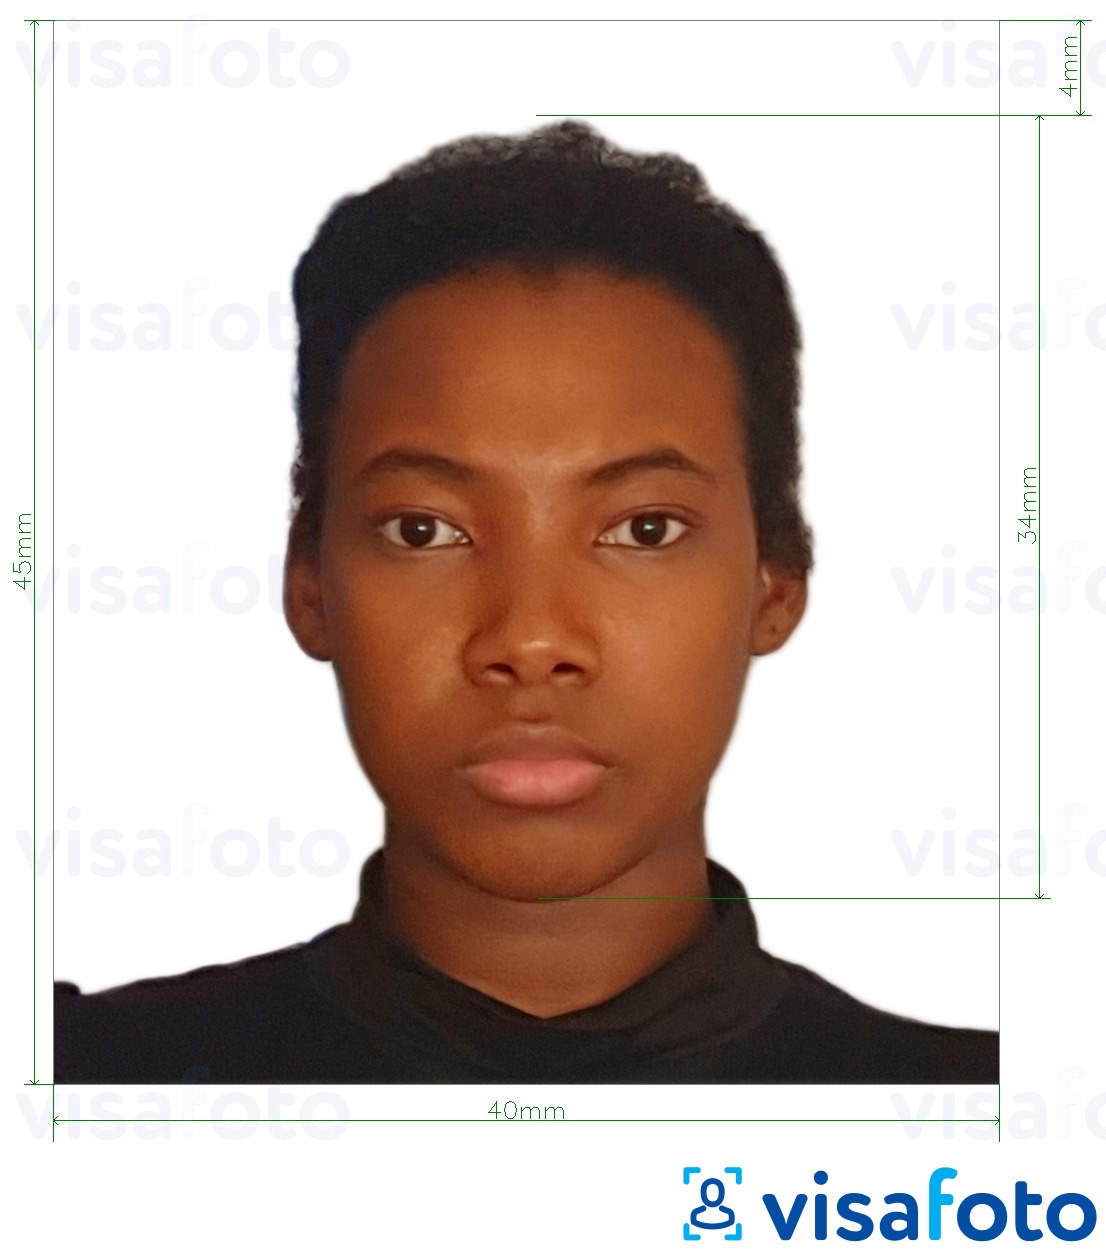 Primjer fotografije za Tanzanijska viza 40x45 mm (4x4,5 cm) s točno određenom veličinom